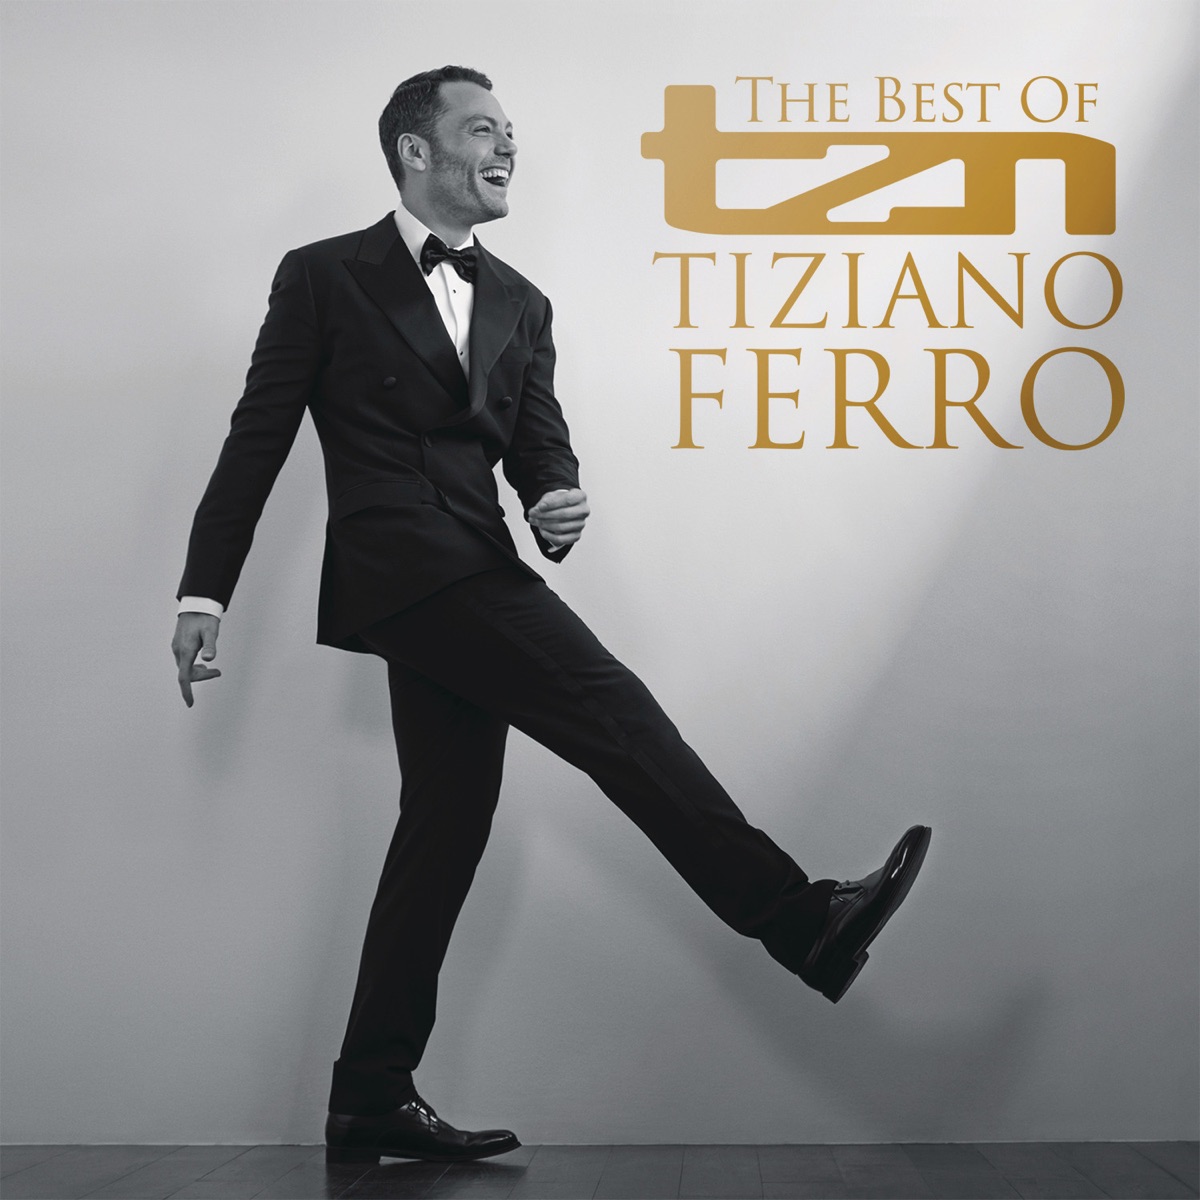 ‎TZN -The Best of Tiziano Ferro (Lo Stadio Tour 2015 Edition) by Tiziano  Ferro on Apple Music